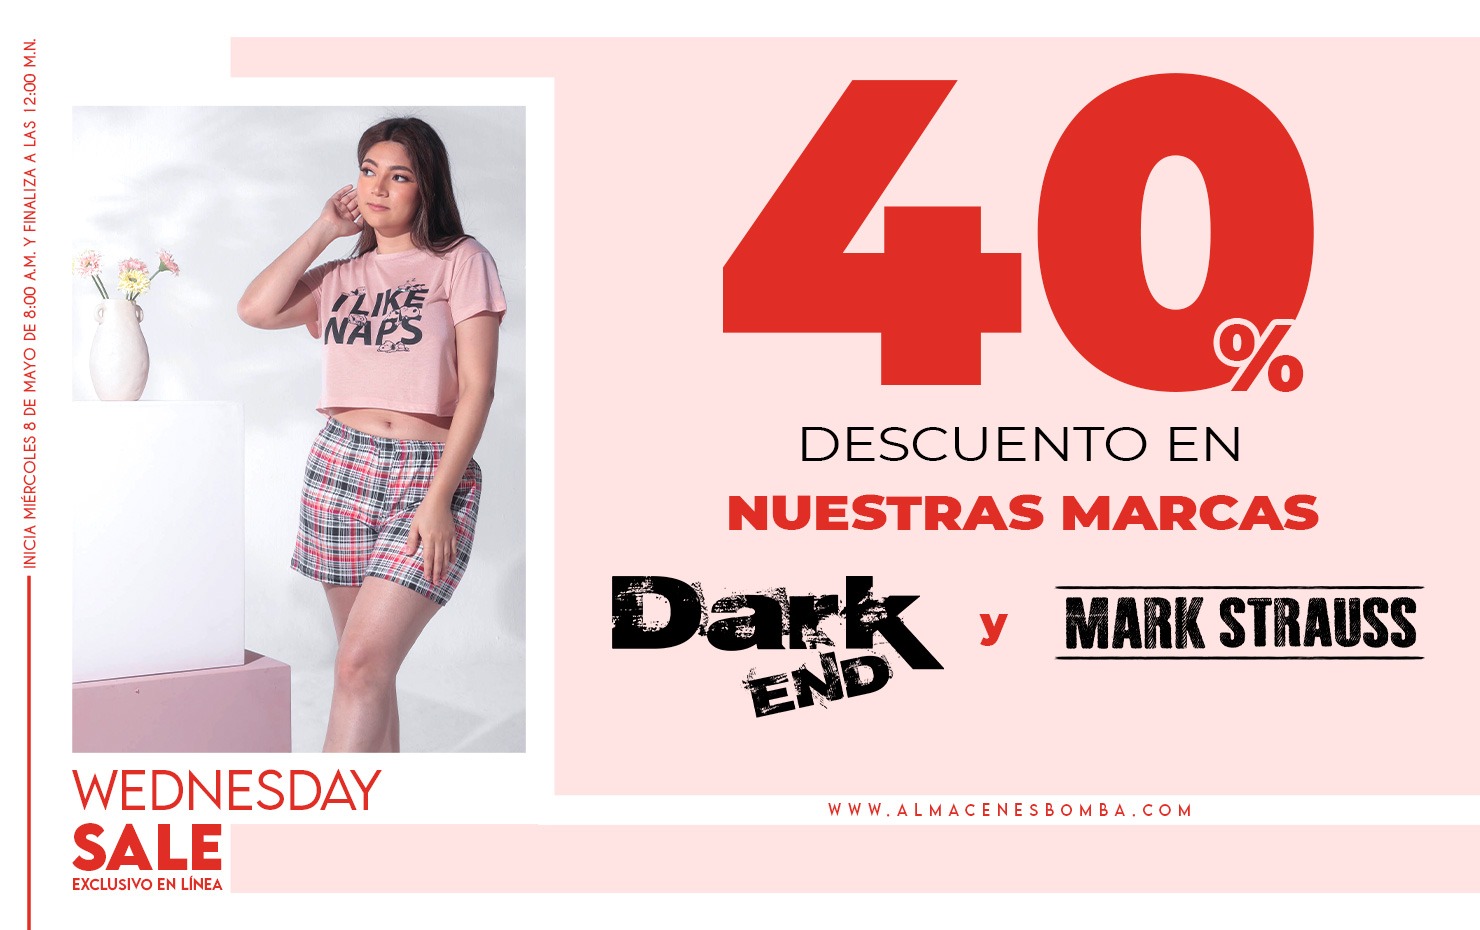 40% Dark End